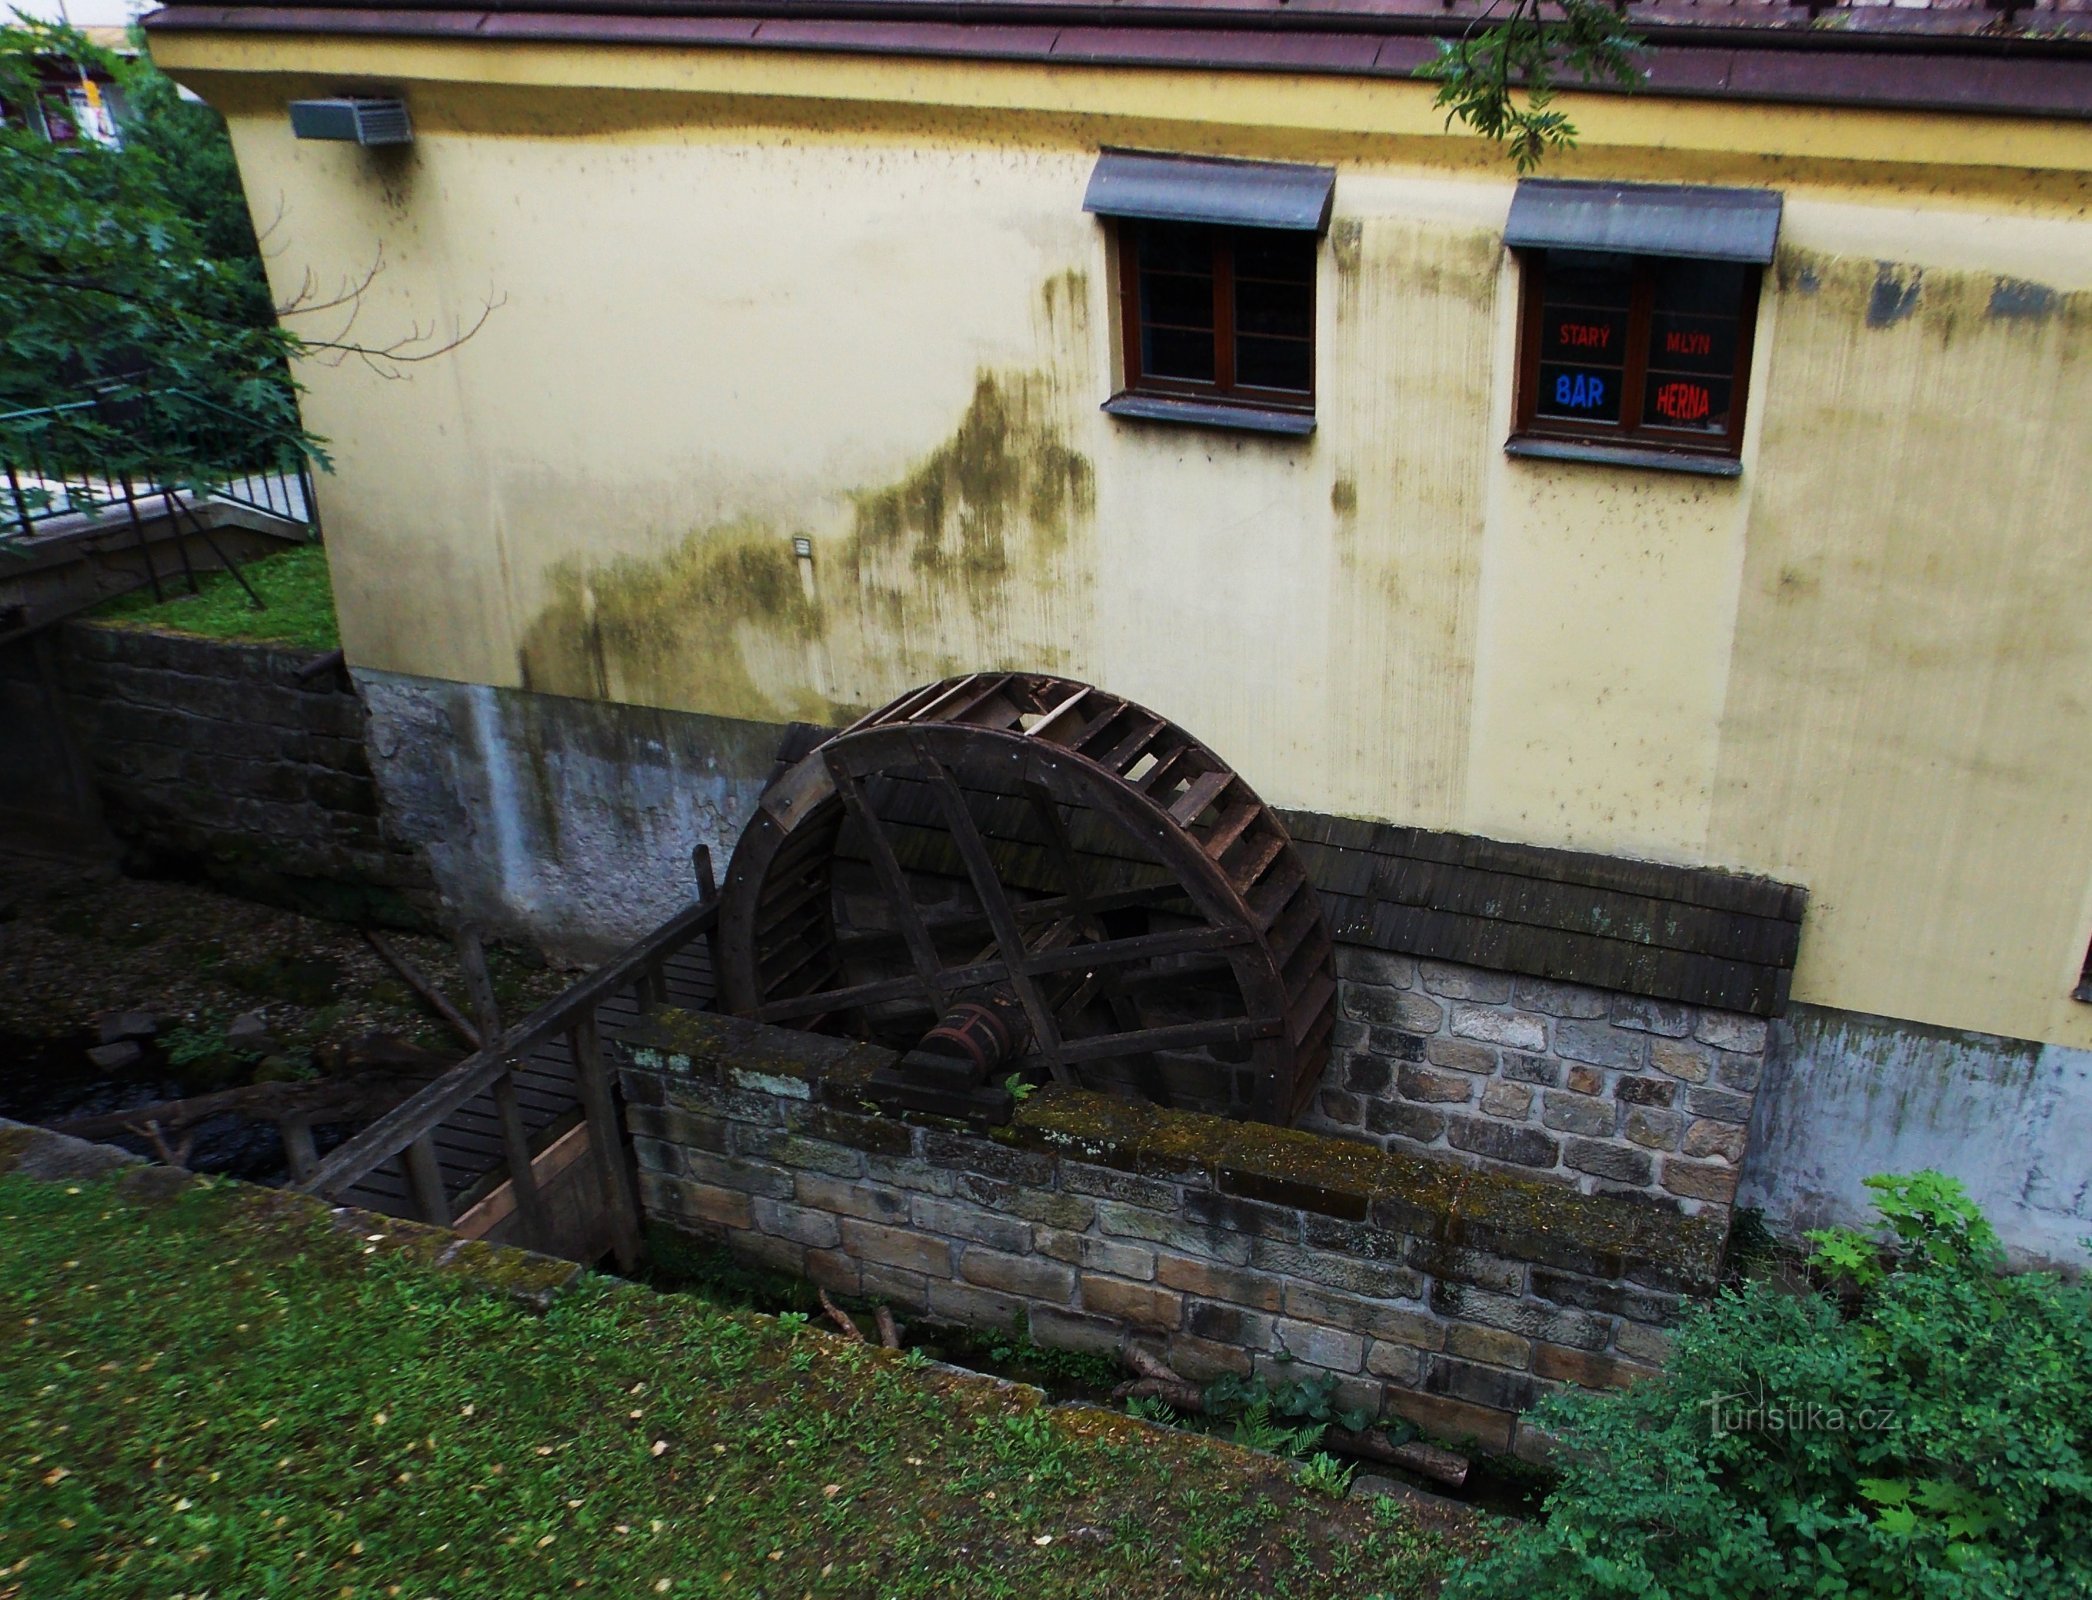 Polívkův, Koželuzský, Starý mlýn w Chrudimi